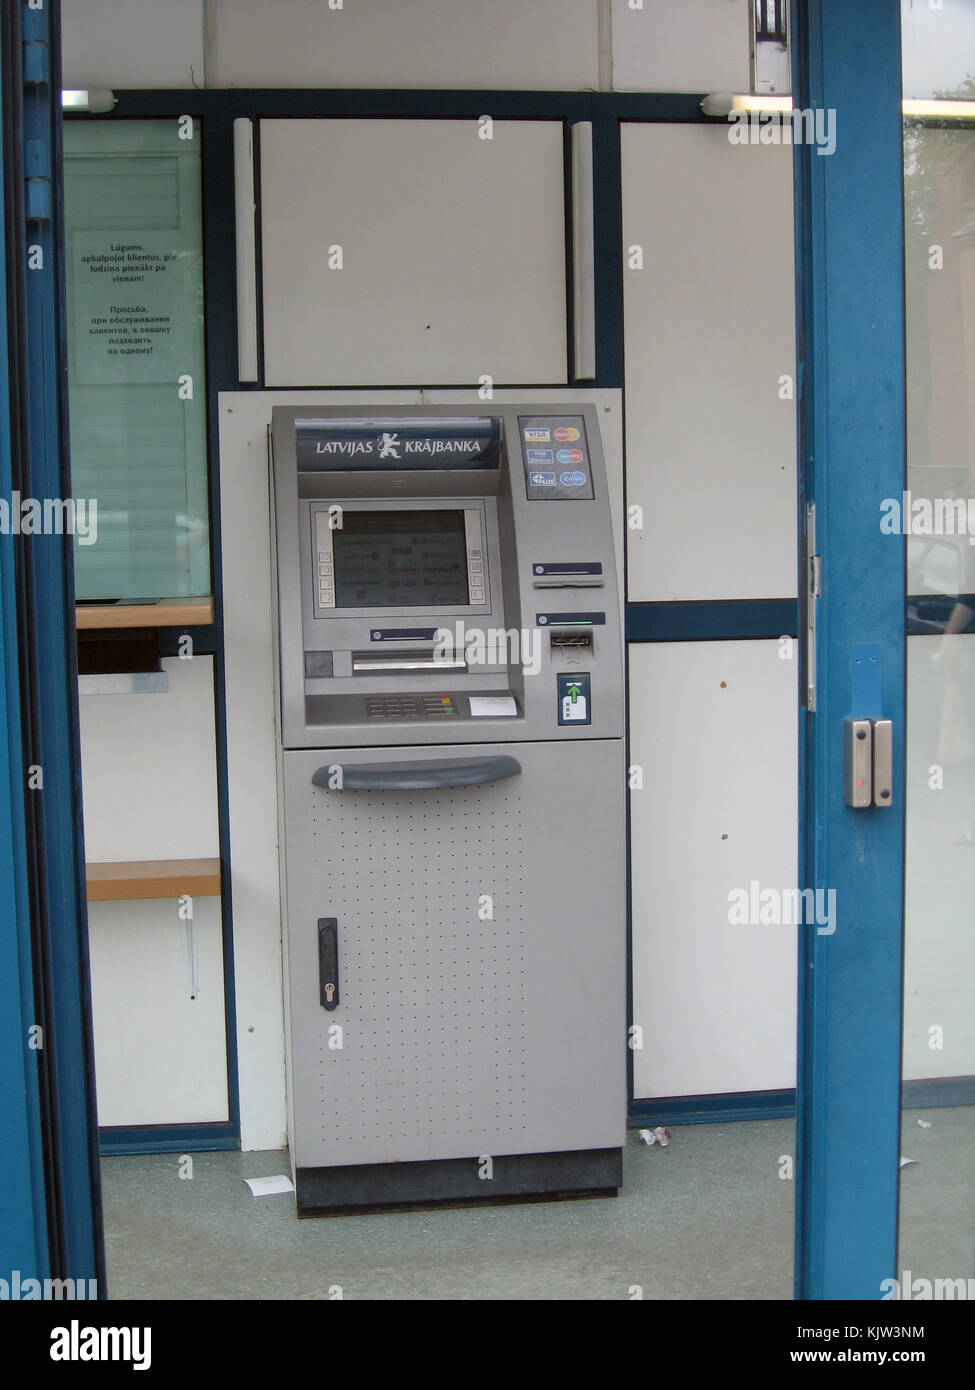 Liepaja, Letonia - Agosto 13, 2011: ATM o cajero automático está ubicado en la pequeña sucursal de banco detrás de puertas de vidrio cerrado. Foto de stock